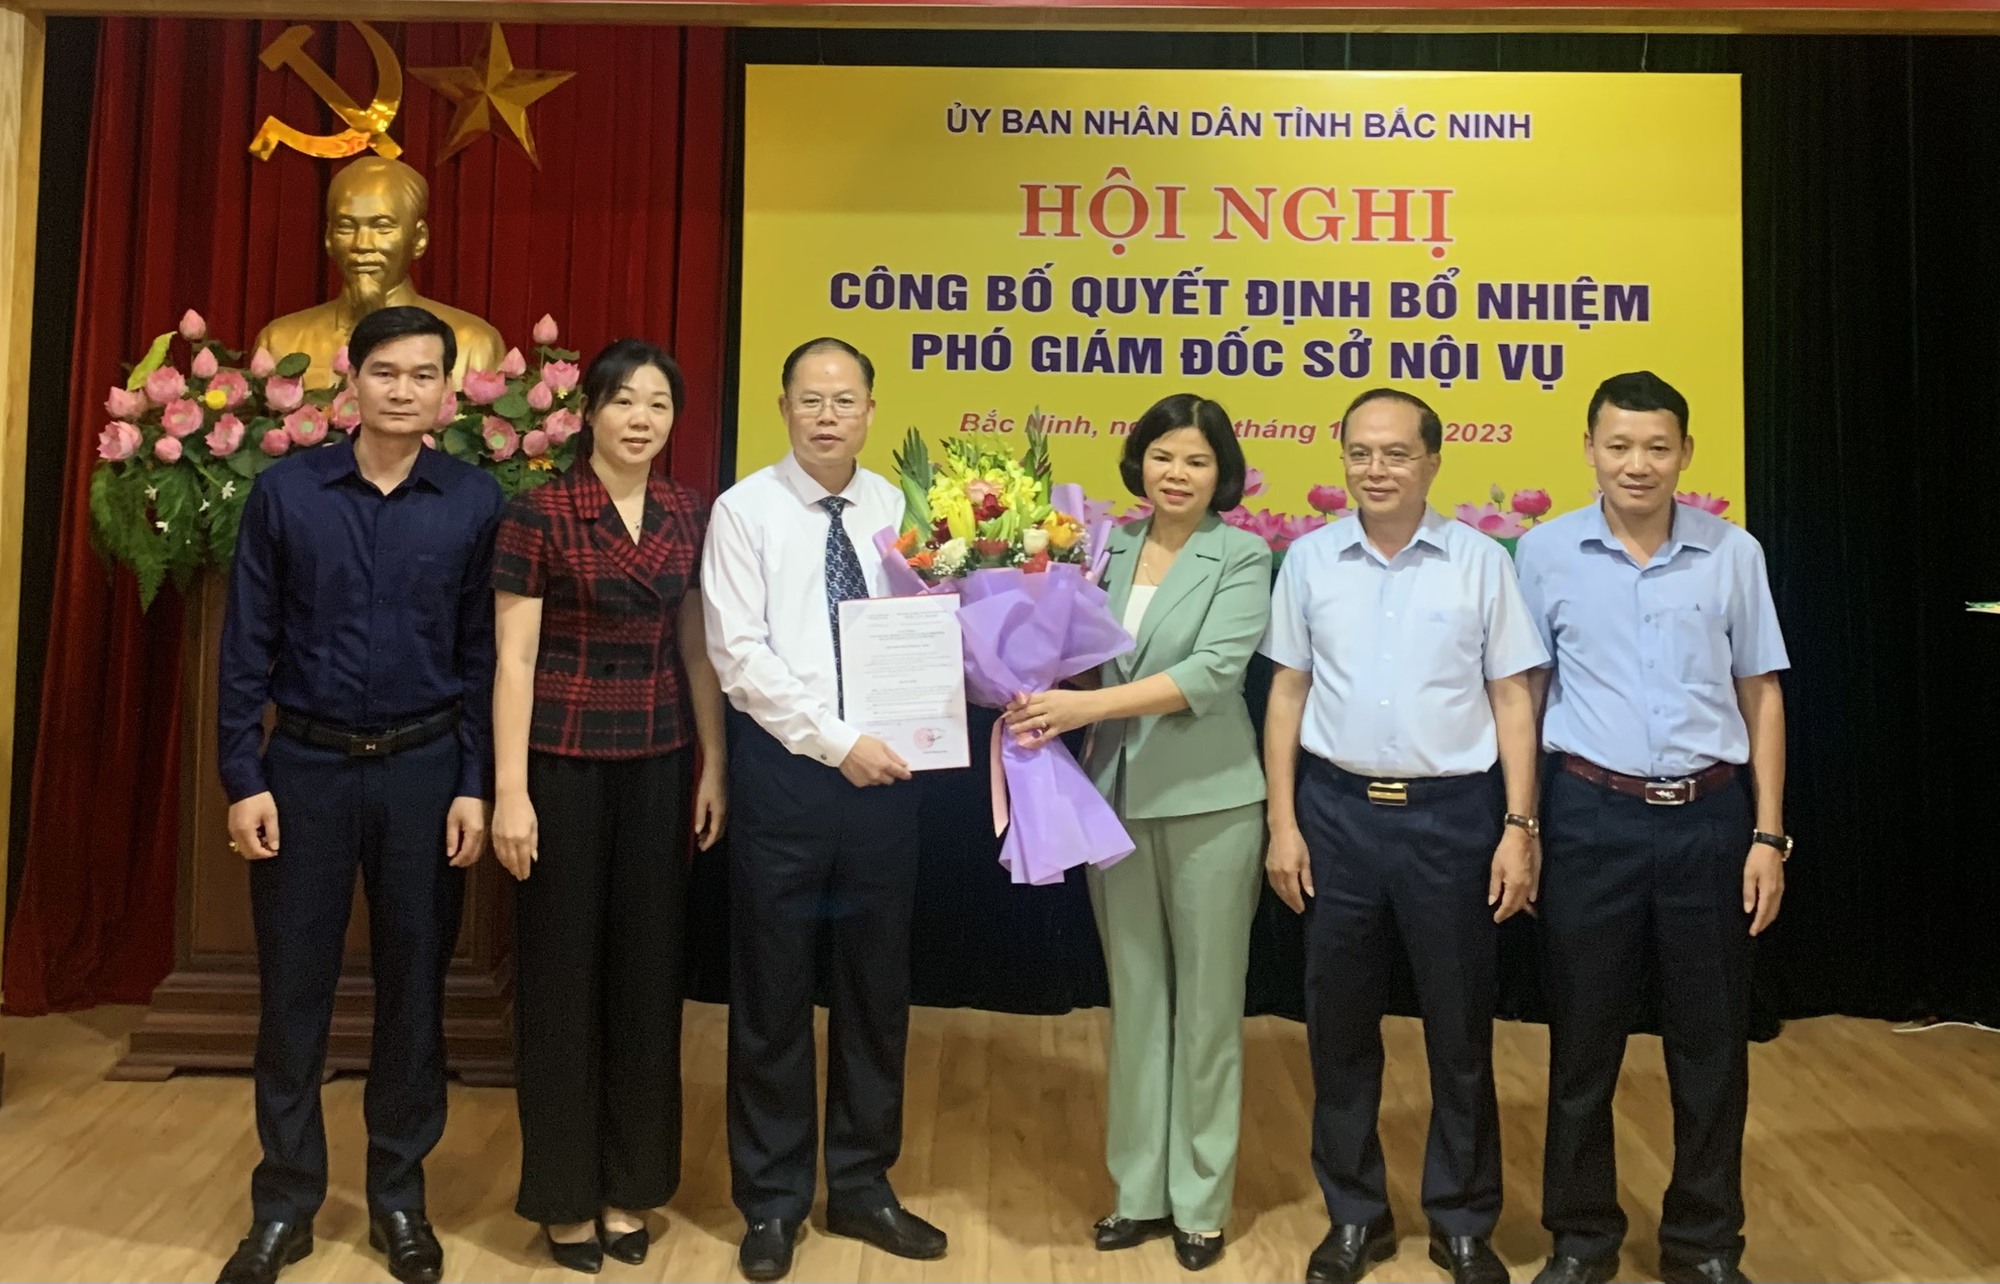 Ông Nguyễn Đăng Khang được bầu giữ chức Phó Giám đốc Sở Nội vụ tỉnh Bắc Ninh - Ảnh 2.